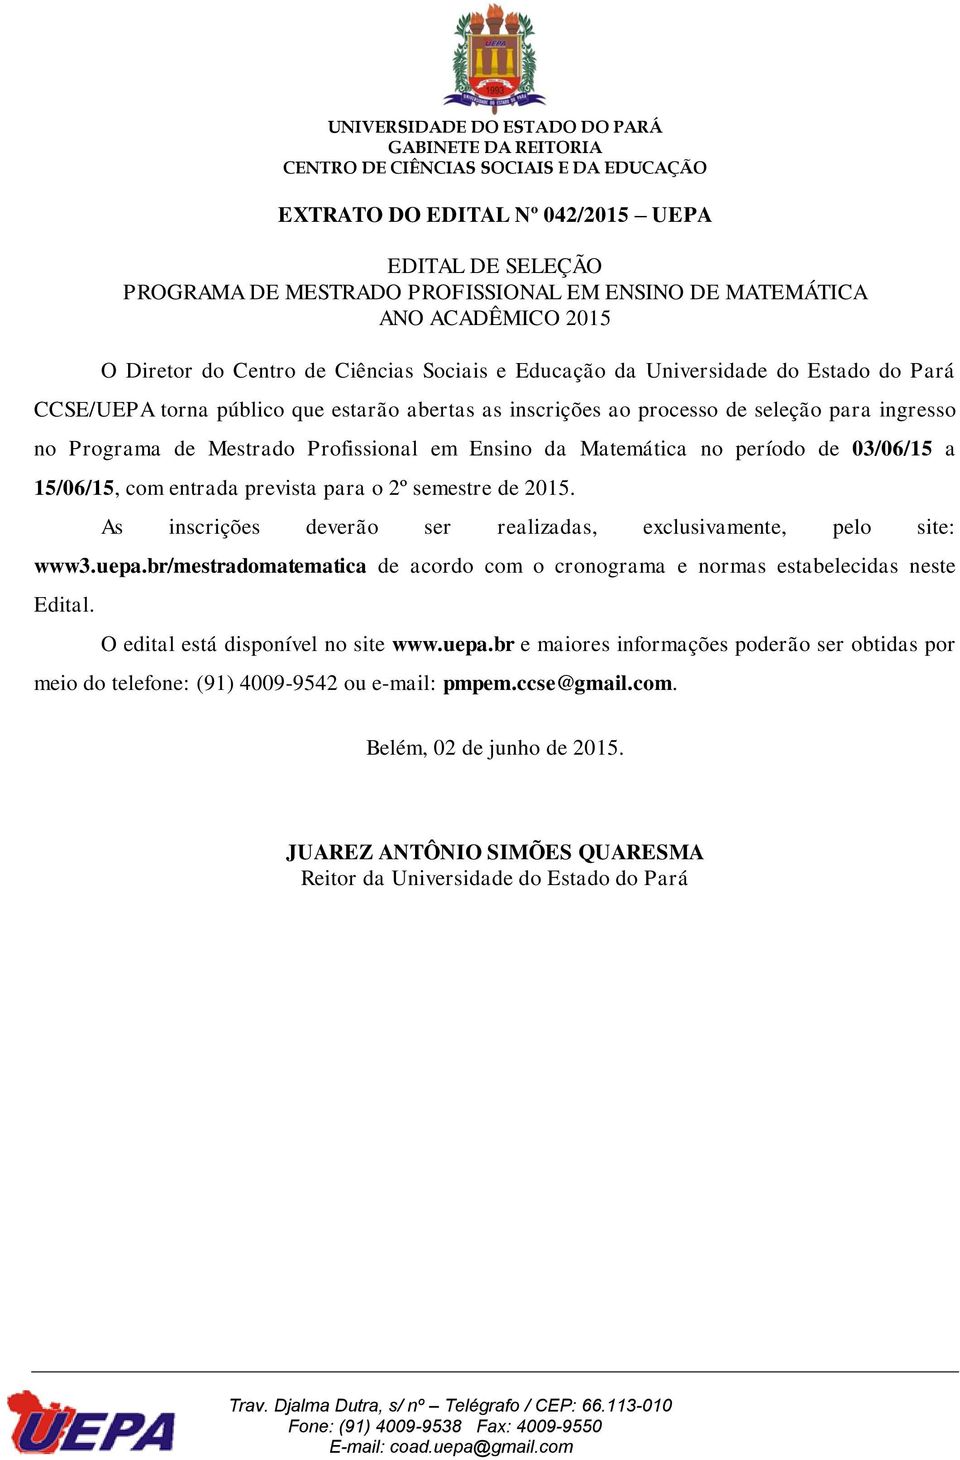 As inscrições deverão ser realizadas, exclusivamente, pelo site: www3.uepa.br/mestradomatematica de acordo com o cronograma e normas estabelecidas neste Edital.